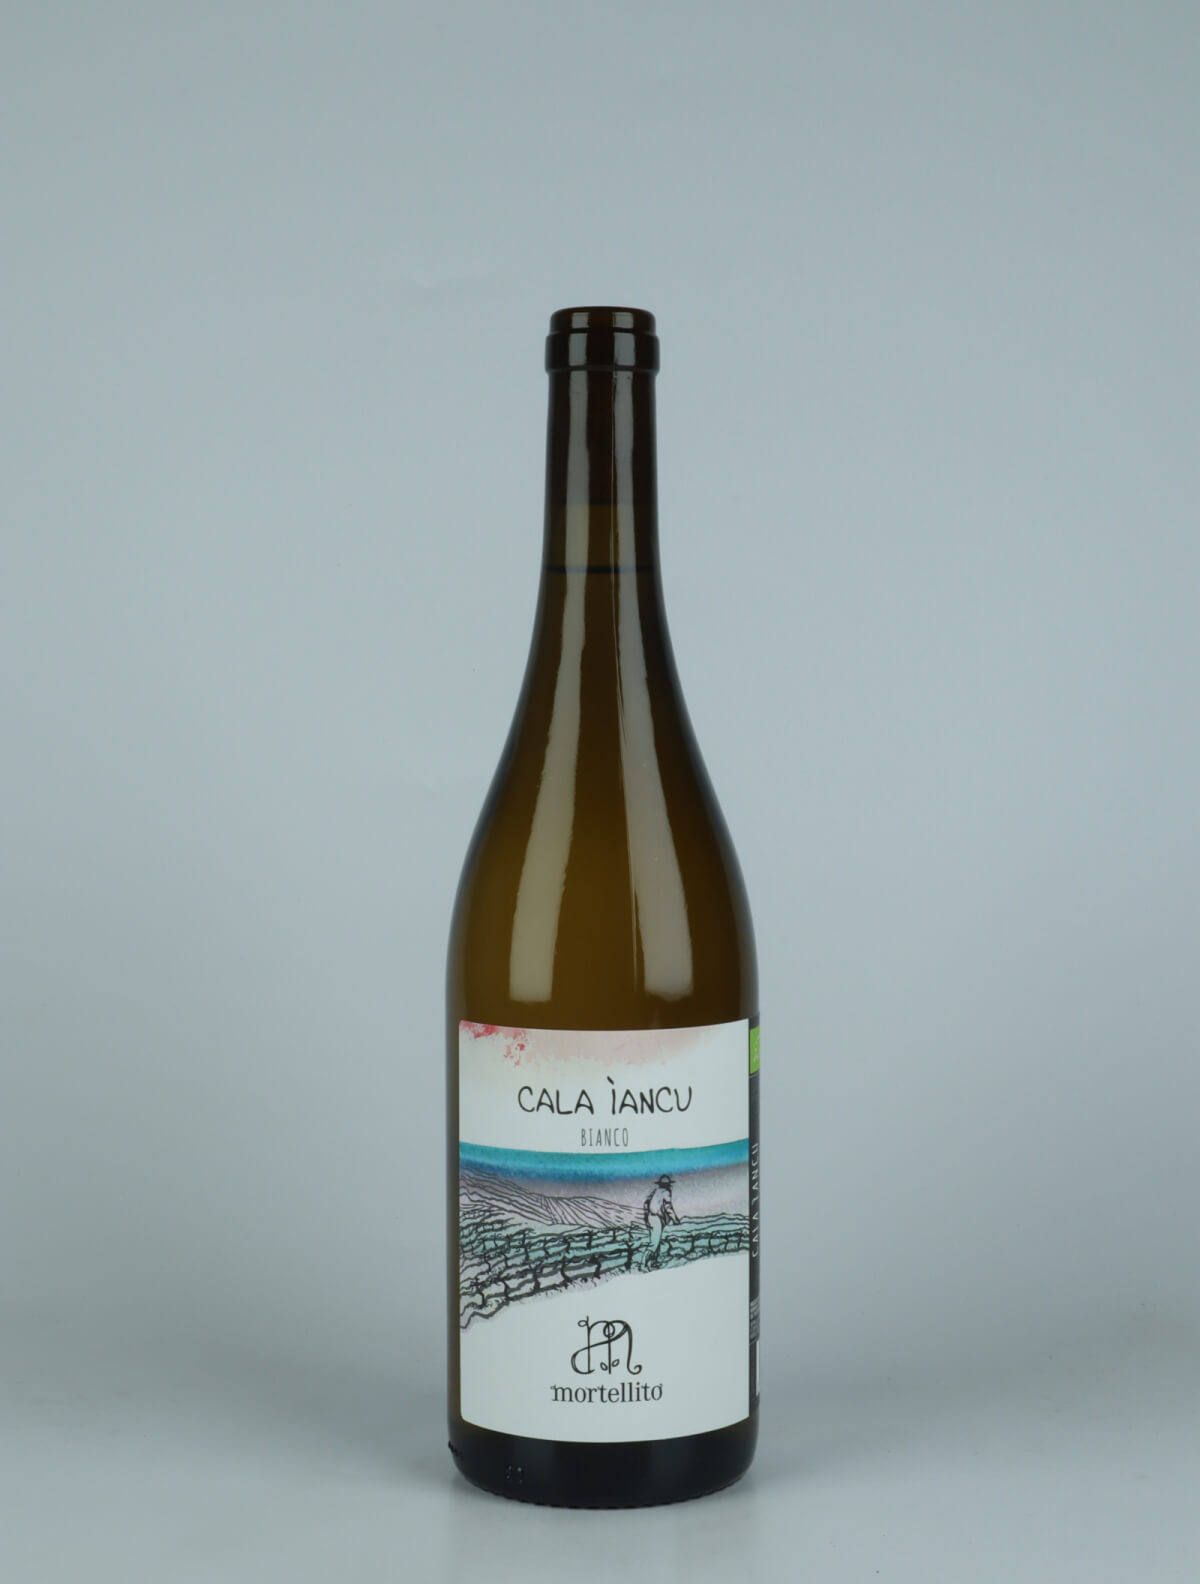 En flaske 2023 Cala Iancu - Bianco Hvidvin fra Il Mortellito, Sicilien i Italien